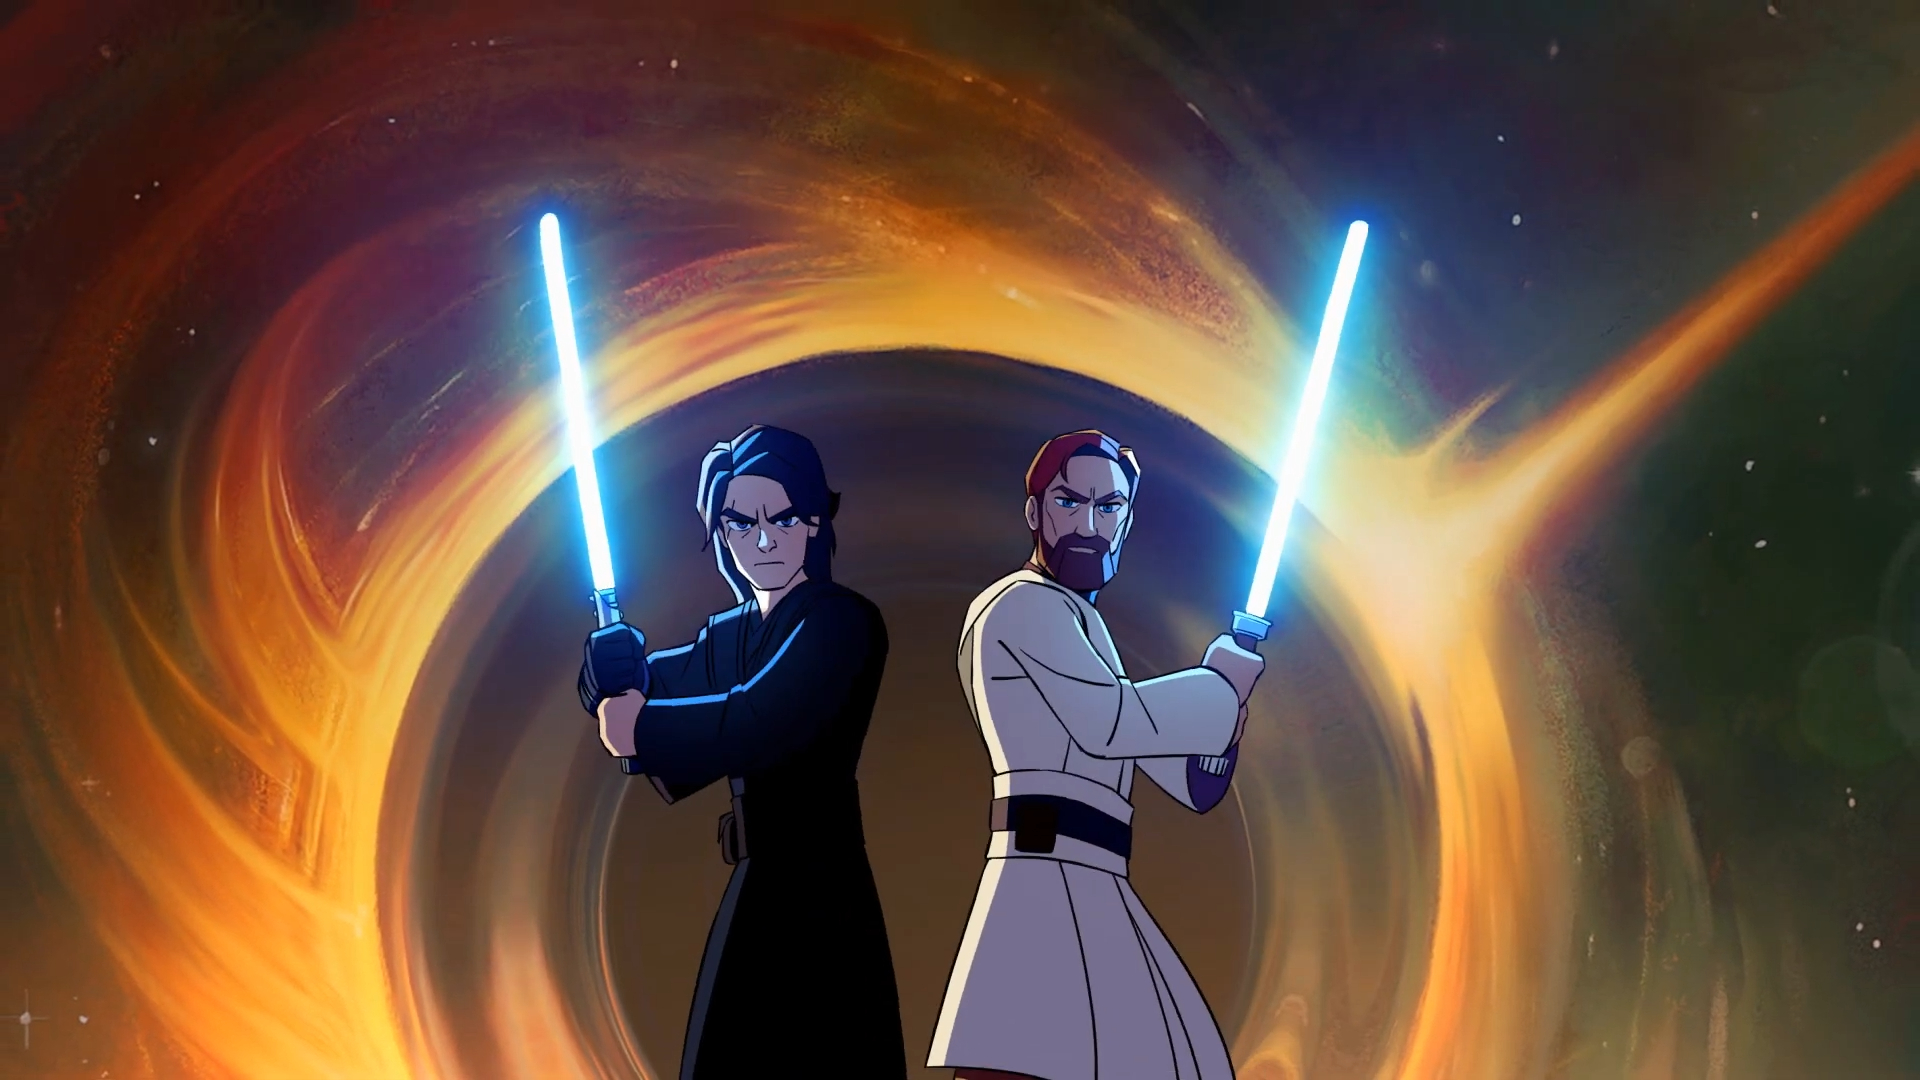 Conozcan la fecha de la colaboración de Brawlhalla con Star Wars que convertirá a Anakin Skywalker y Obi-Wan Kenobi en personajes del juego.